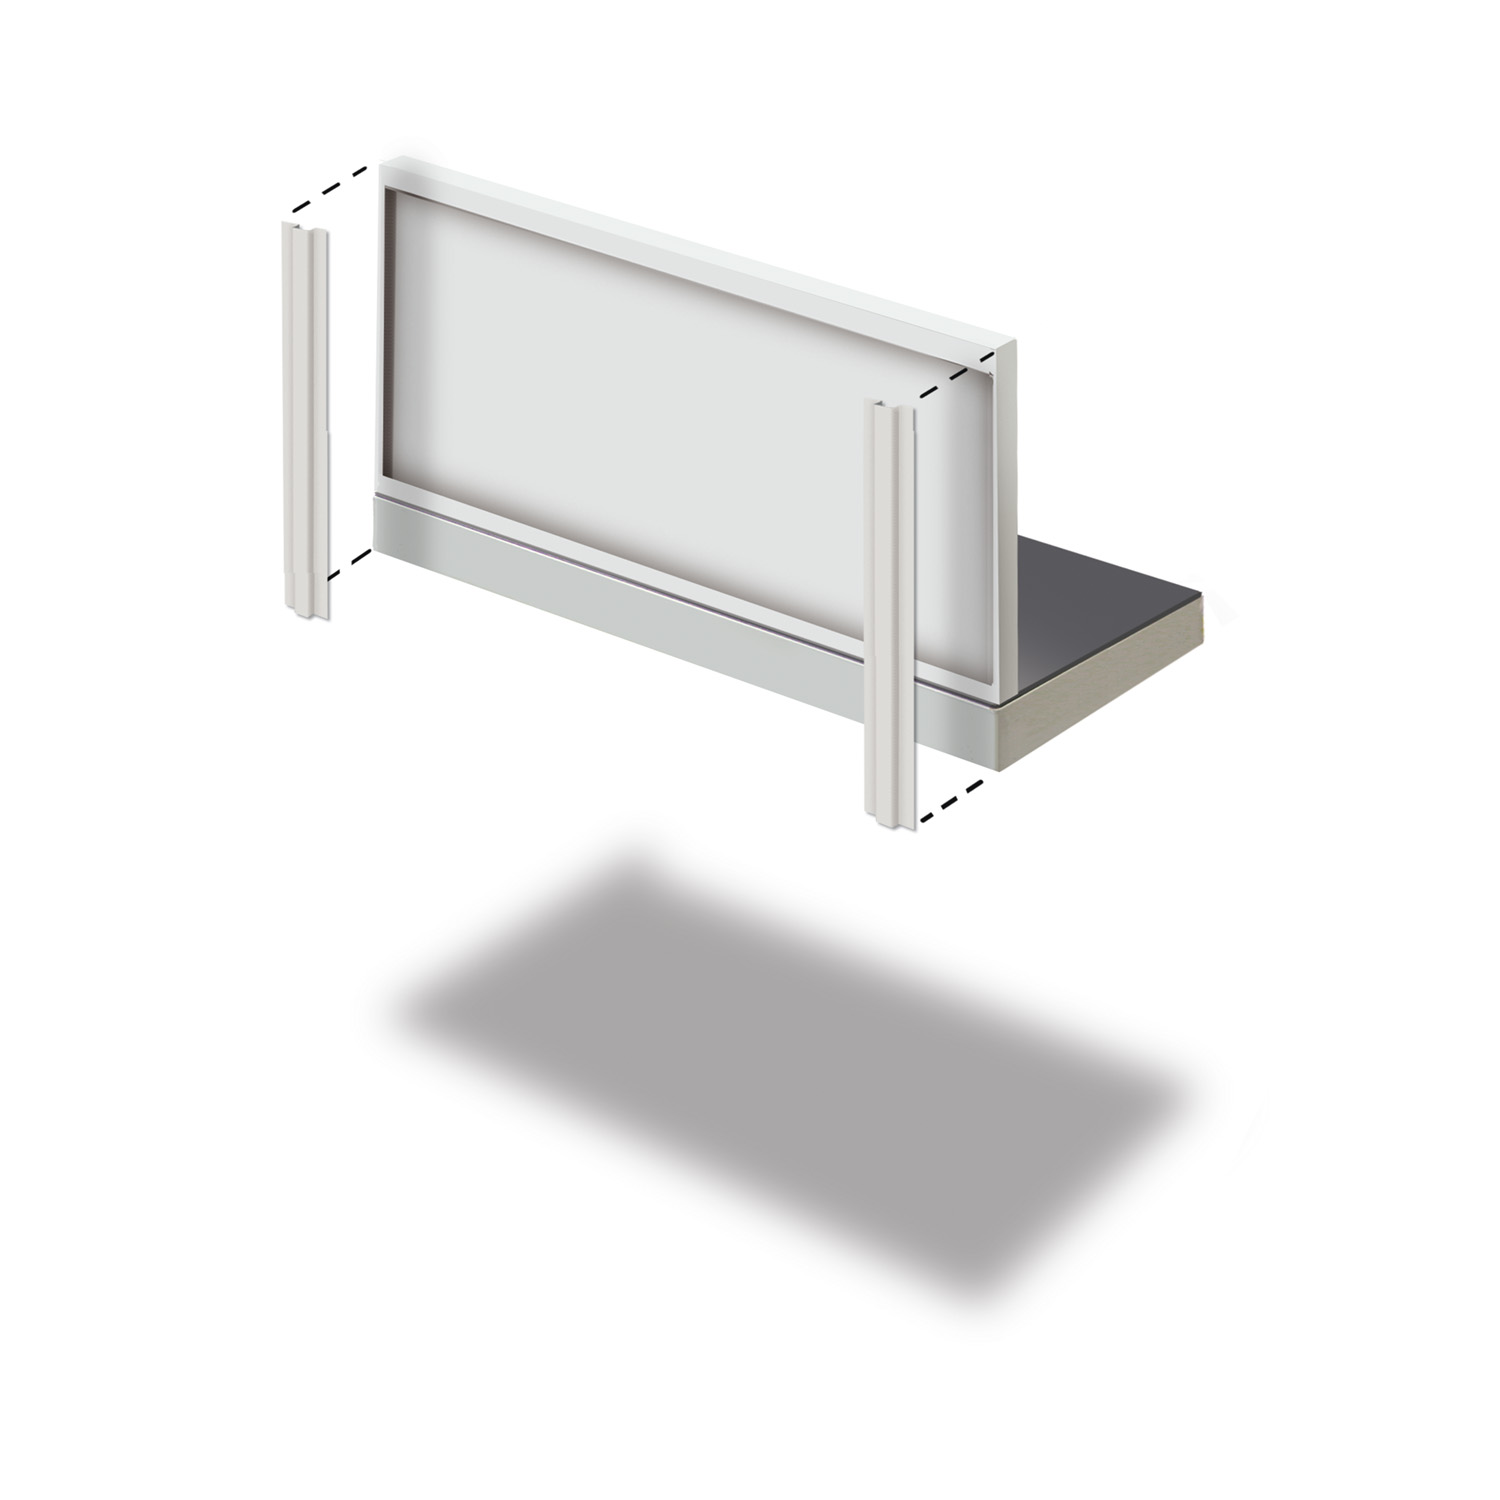 Soportes verticales x2 (440mm panel/unidades de unión o banco de trabajo)